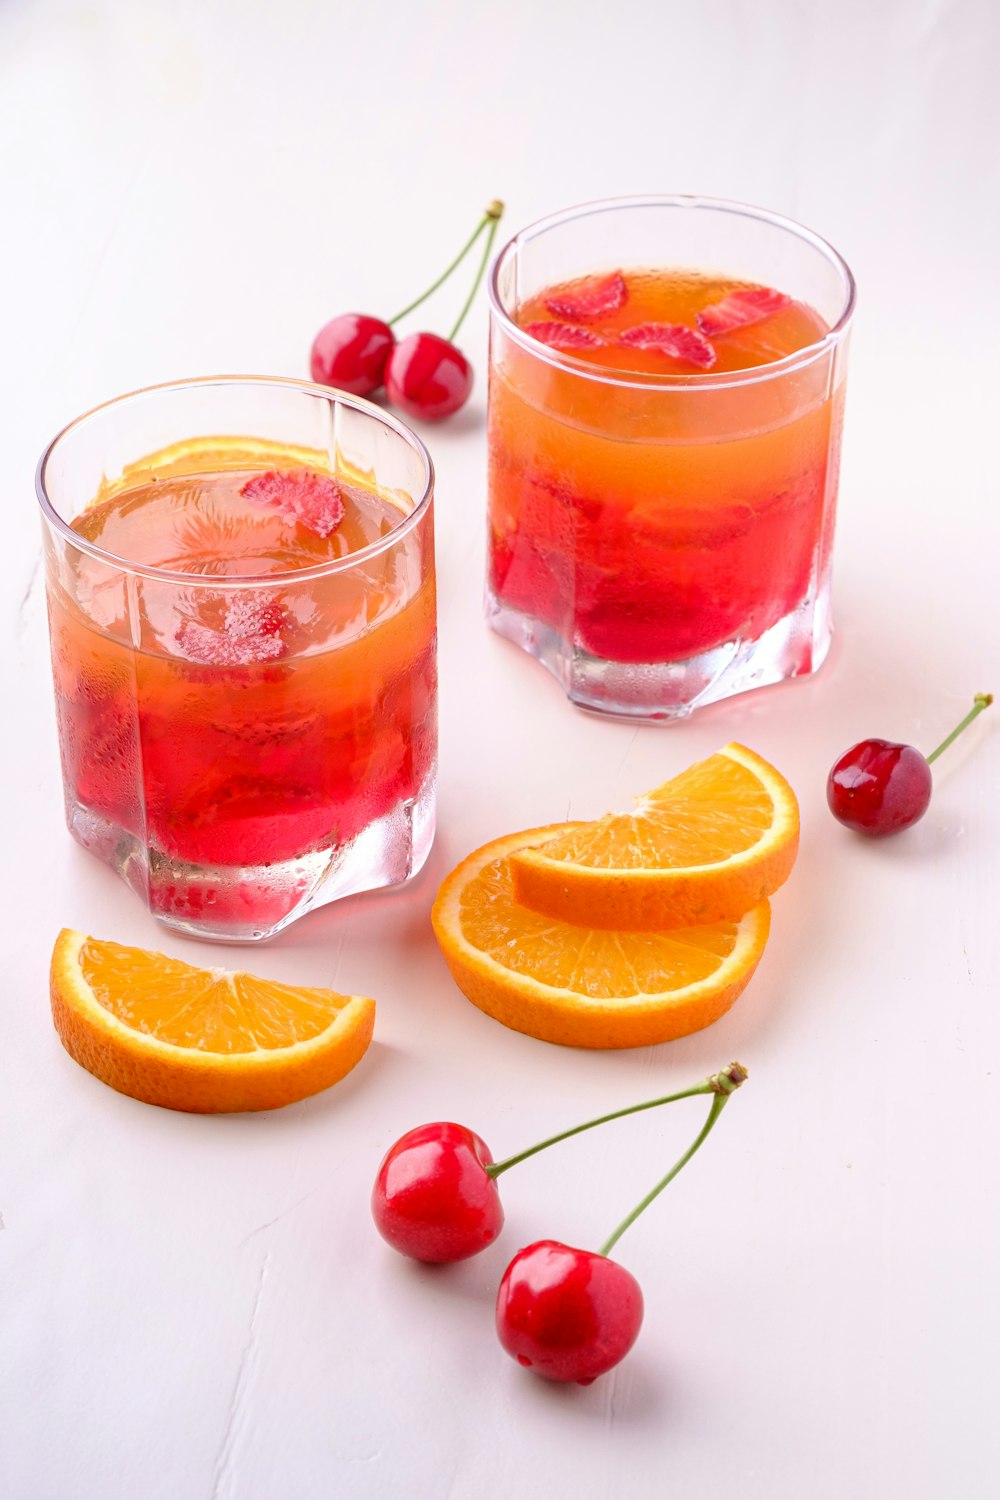 due bevande all'arancia e alla ciliegia in bicchieri